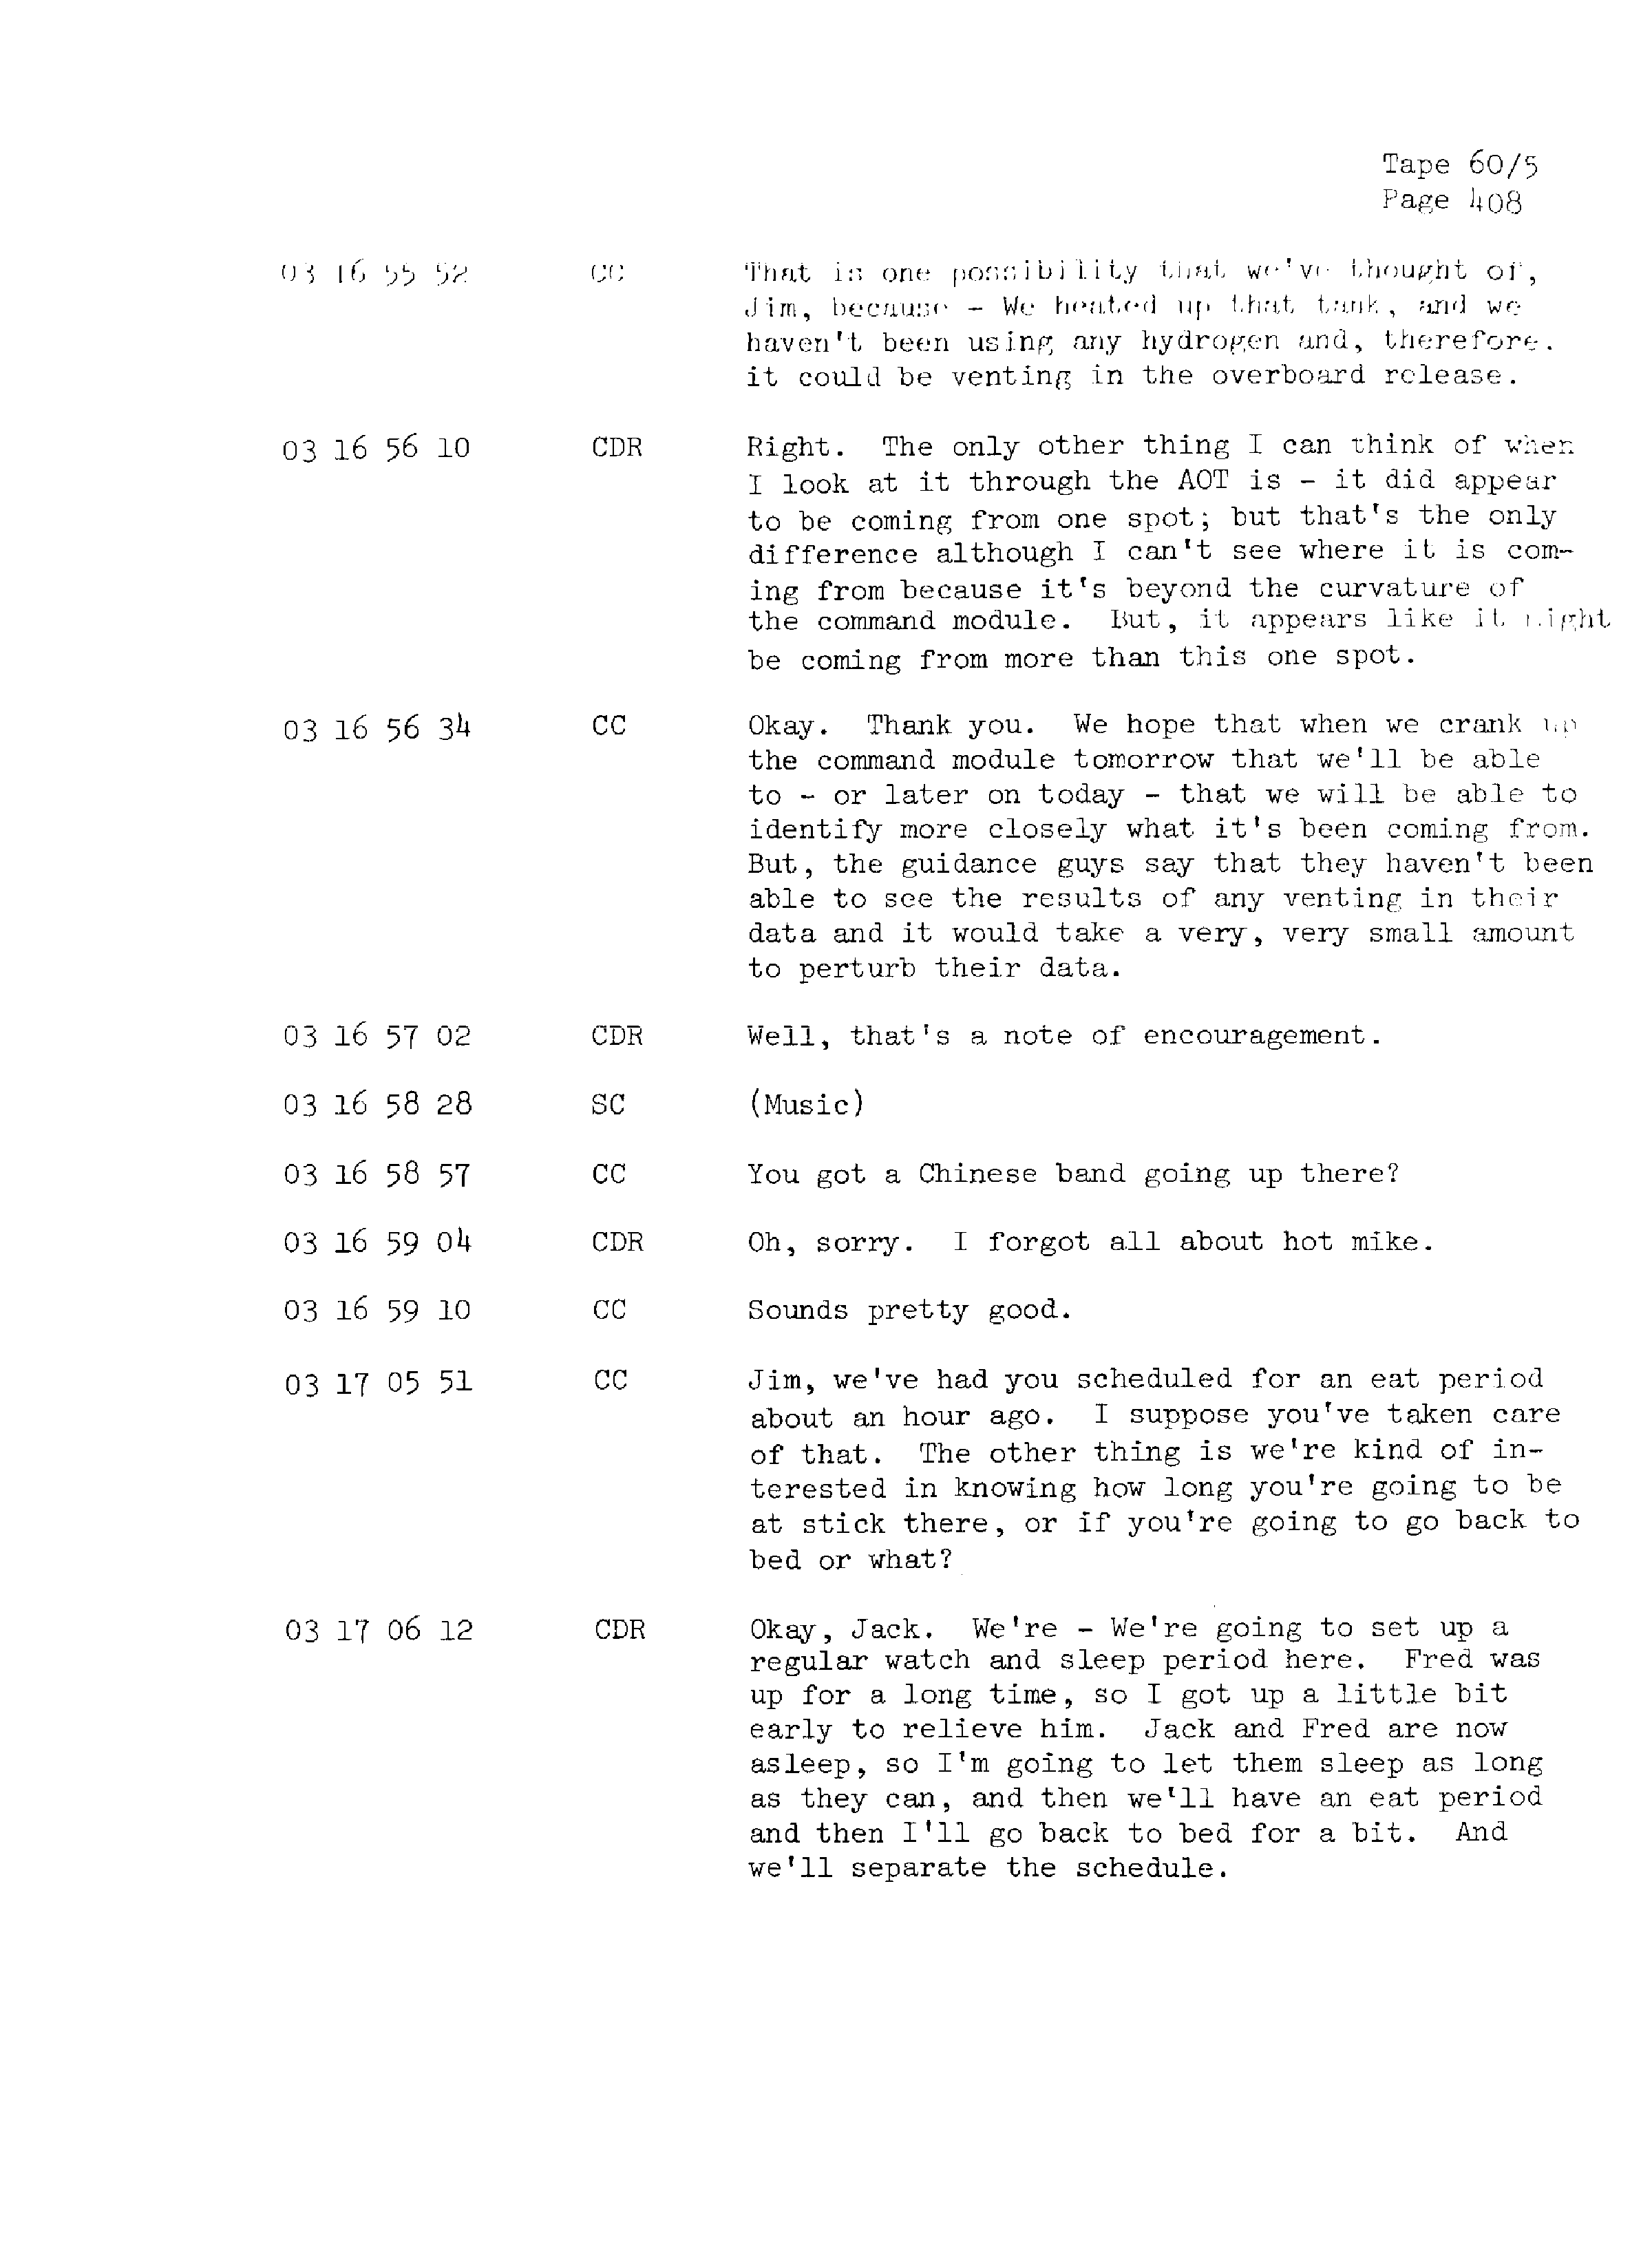 Page 415 of Apollo 13’s original transcript